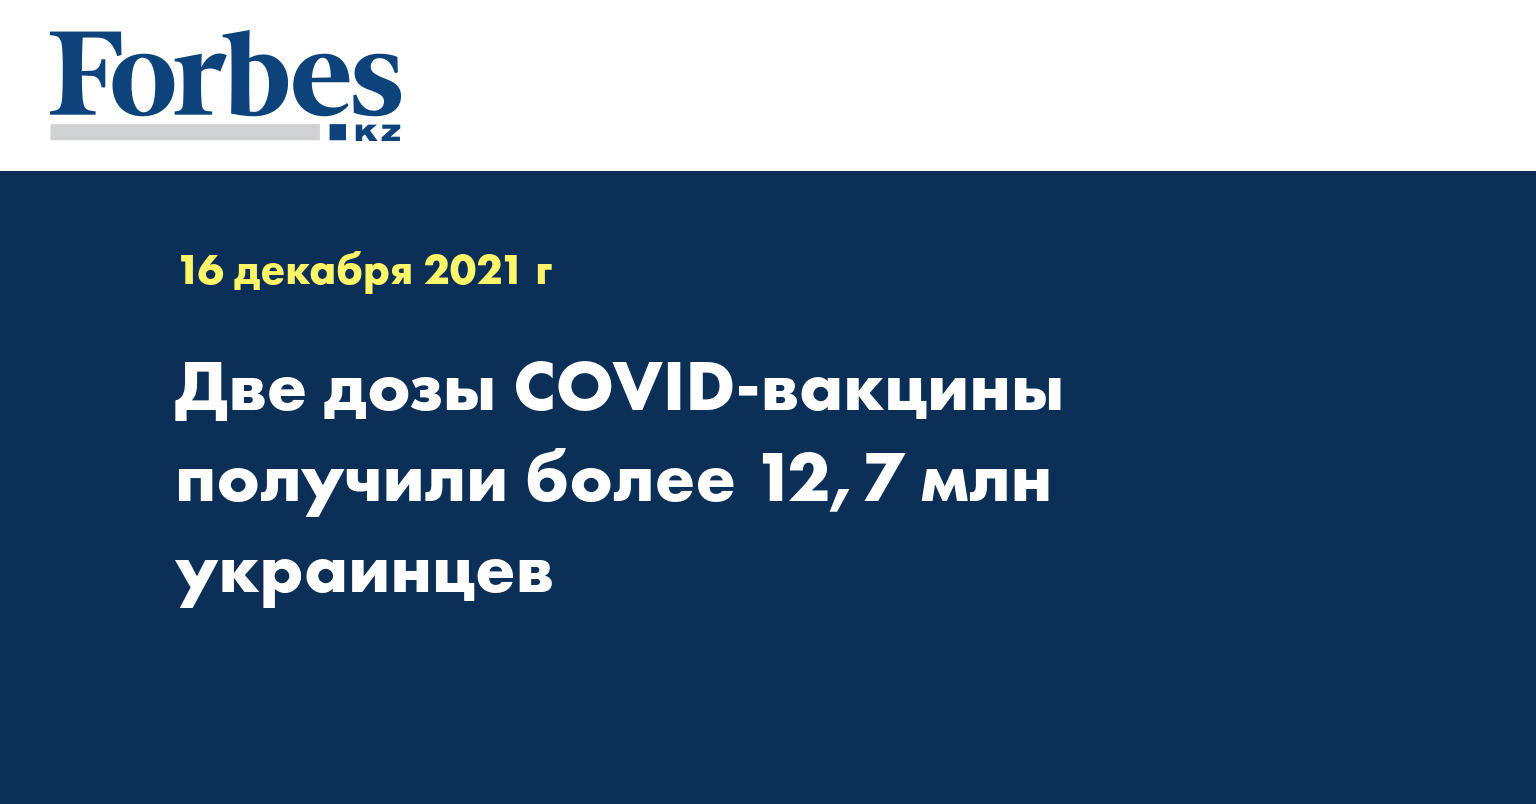 Две дозы COVID-вакцины получили более 12,7 млн украинцев